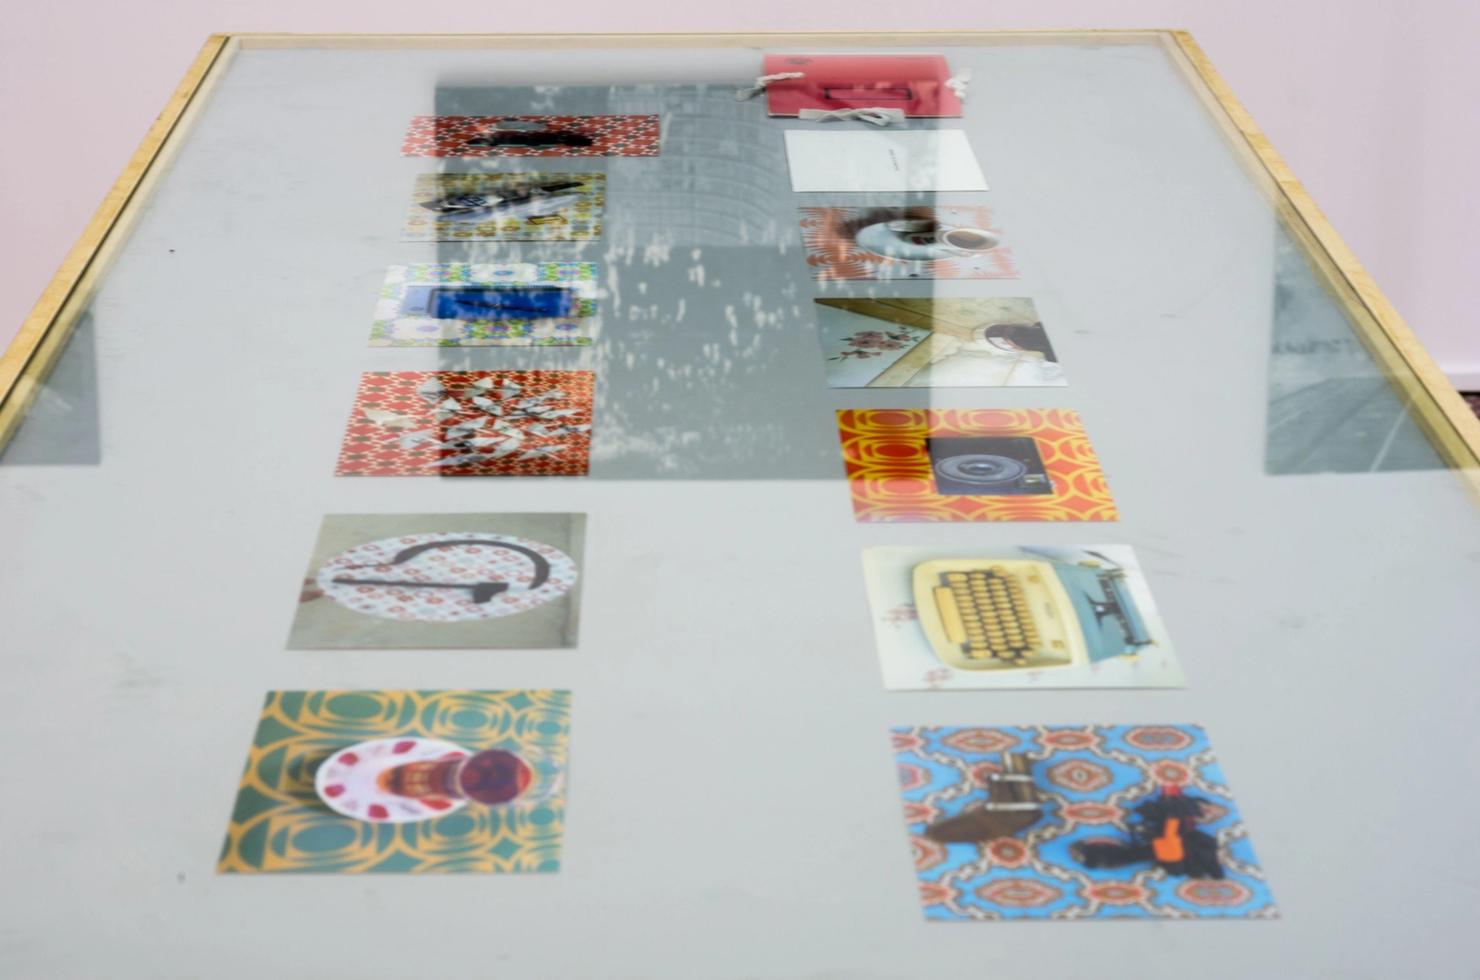 Α thin showcase on a table including different prints depicting objects set against domestic backdrops of an earlier time